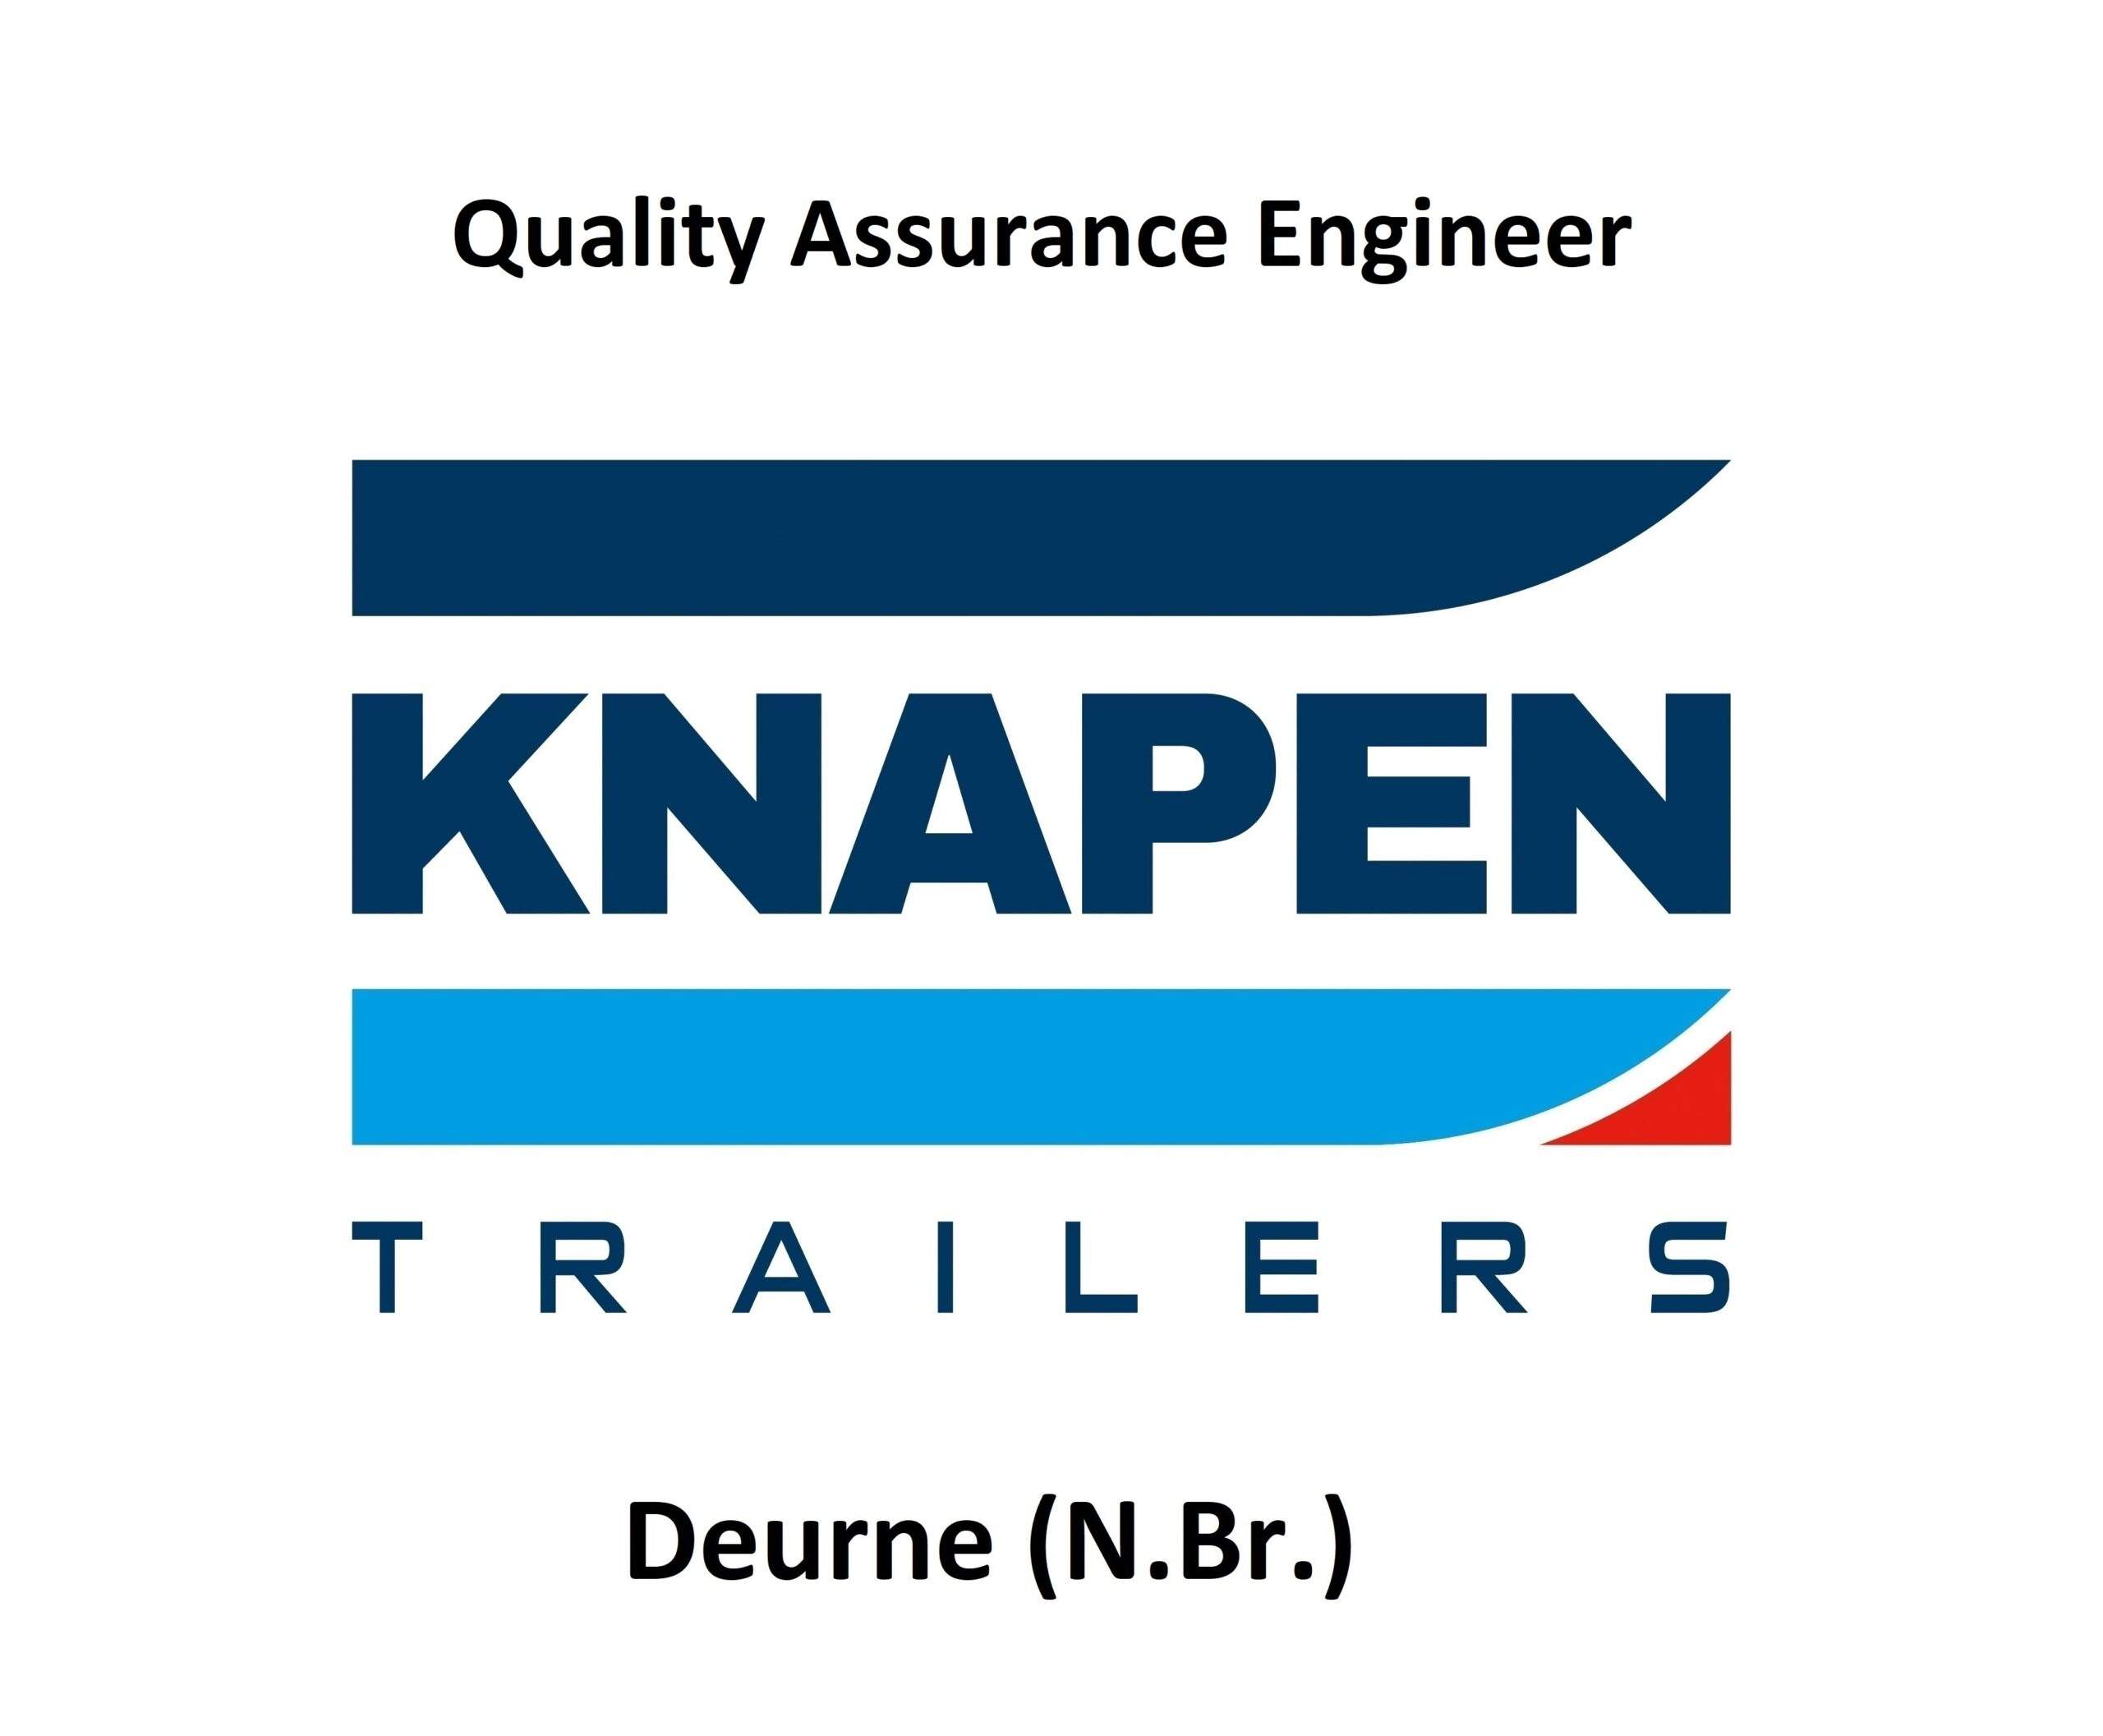 Vacature voor een Quality Assurance Engineer bij Knapen Trailers in Deurne